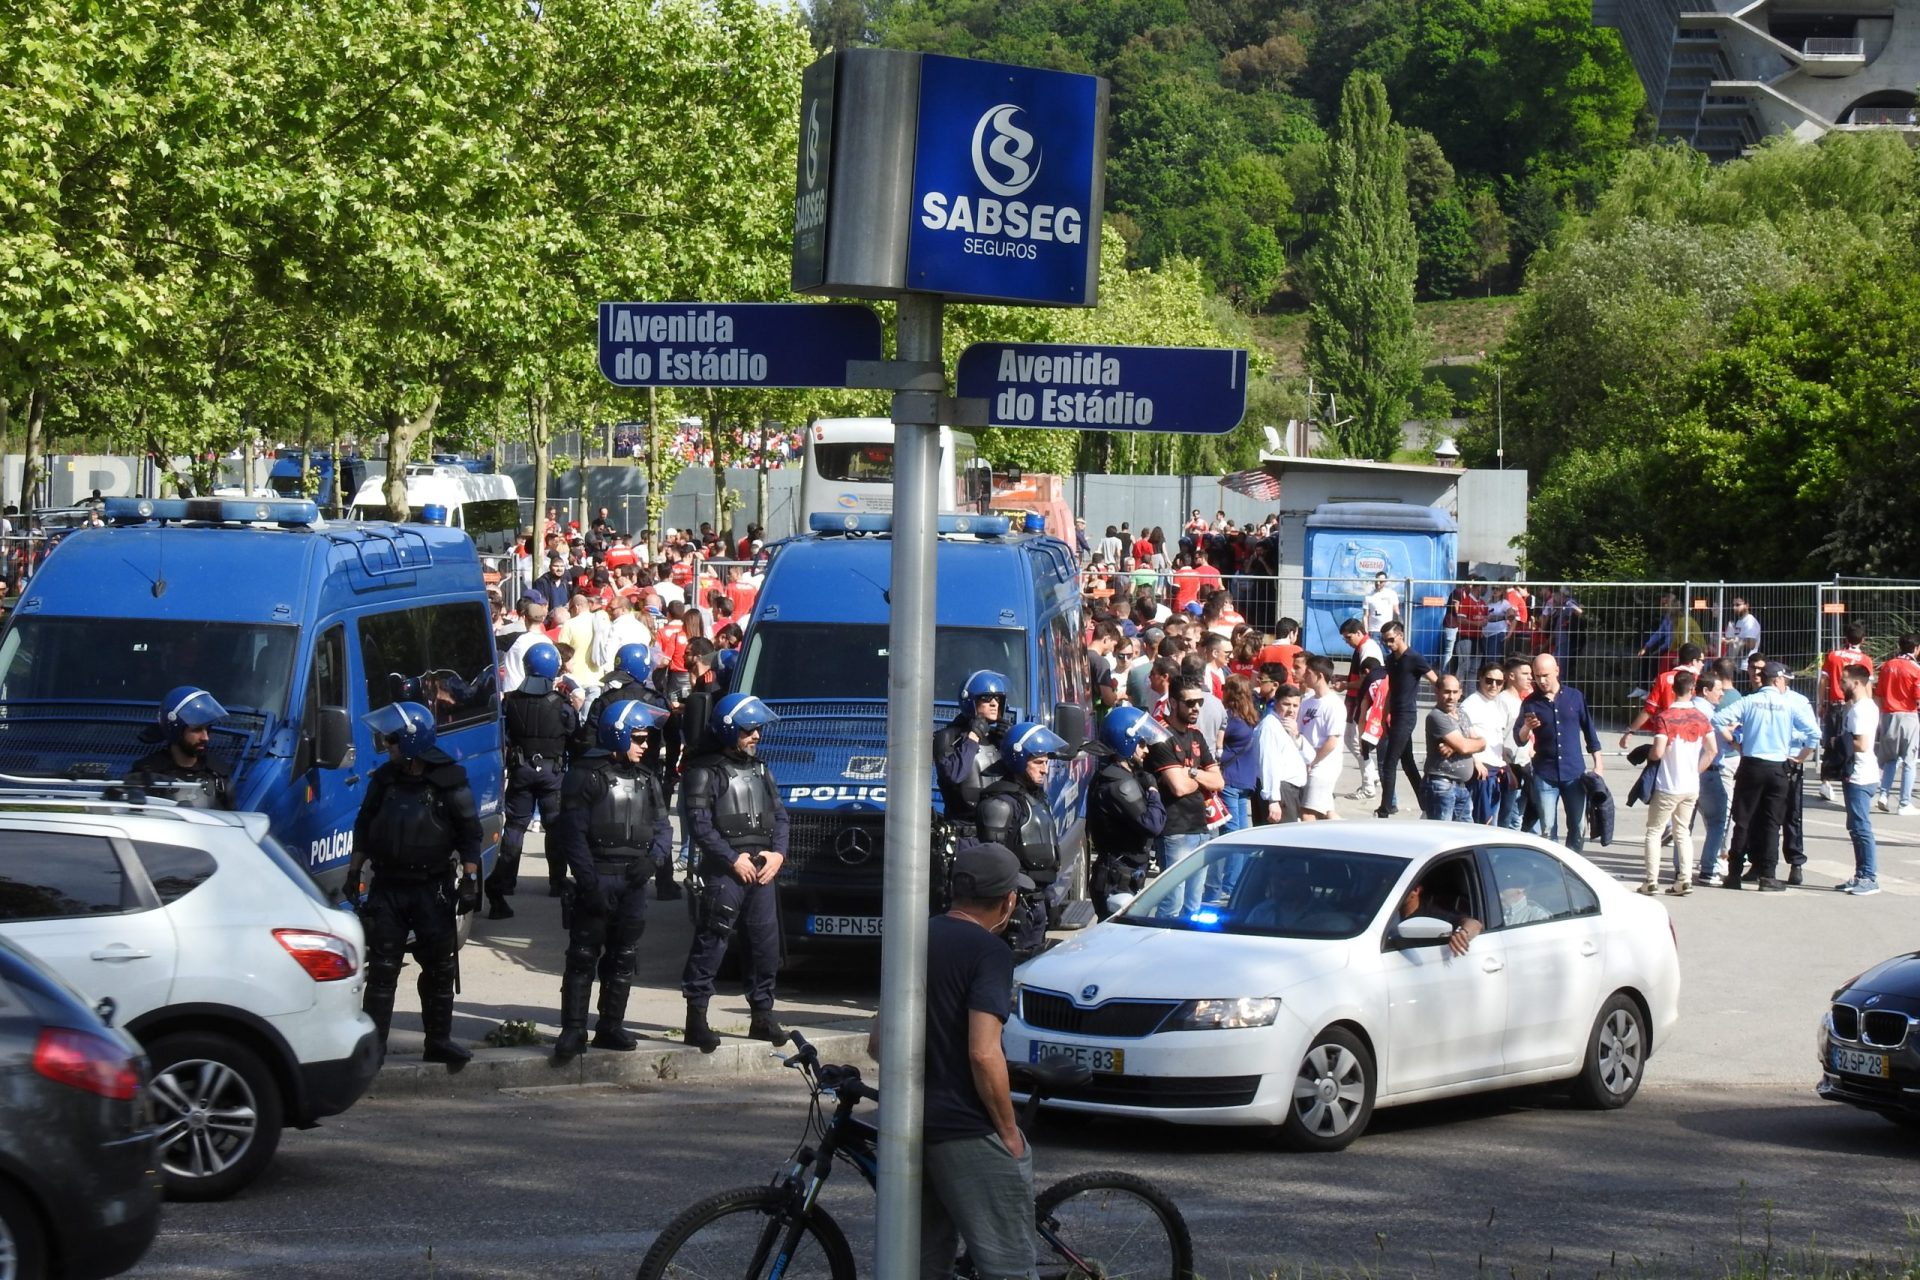 Adeptos do Benfica arremessam cadeiras no Estádio de Braga | VÍDEO